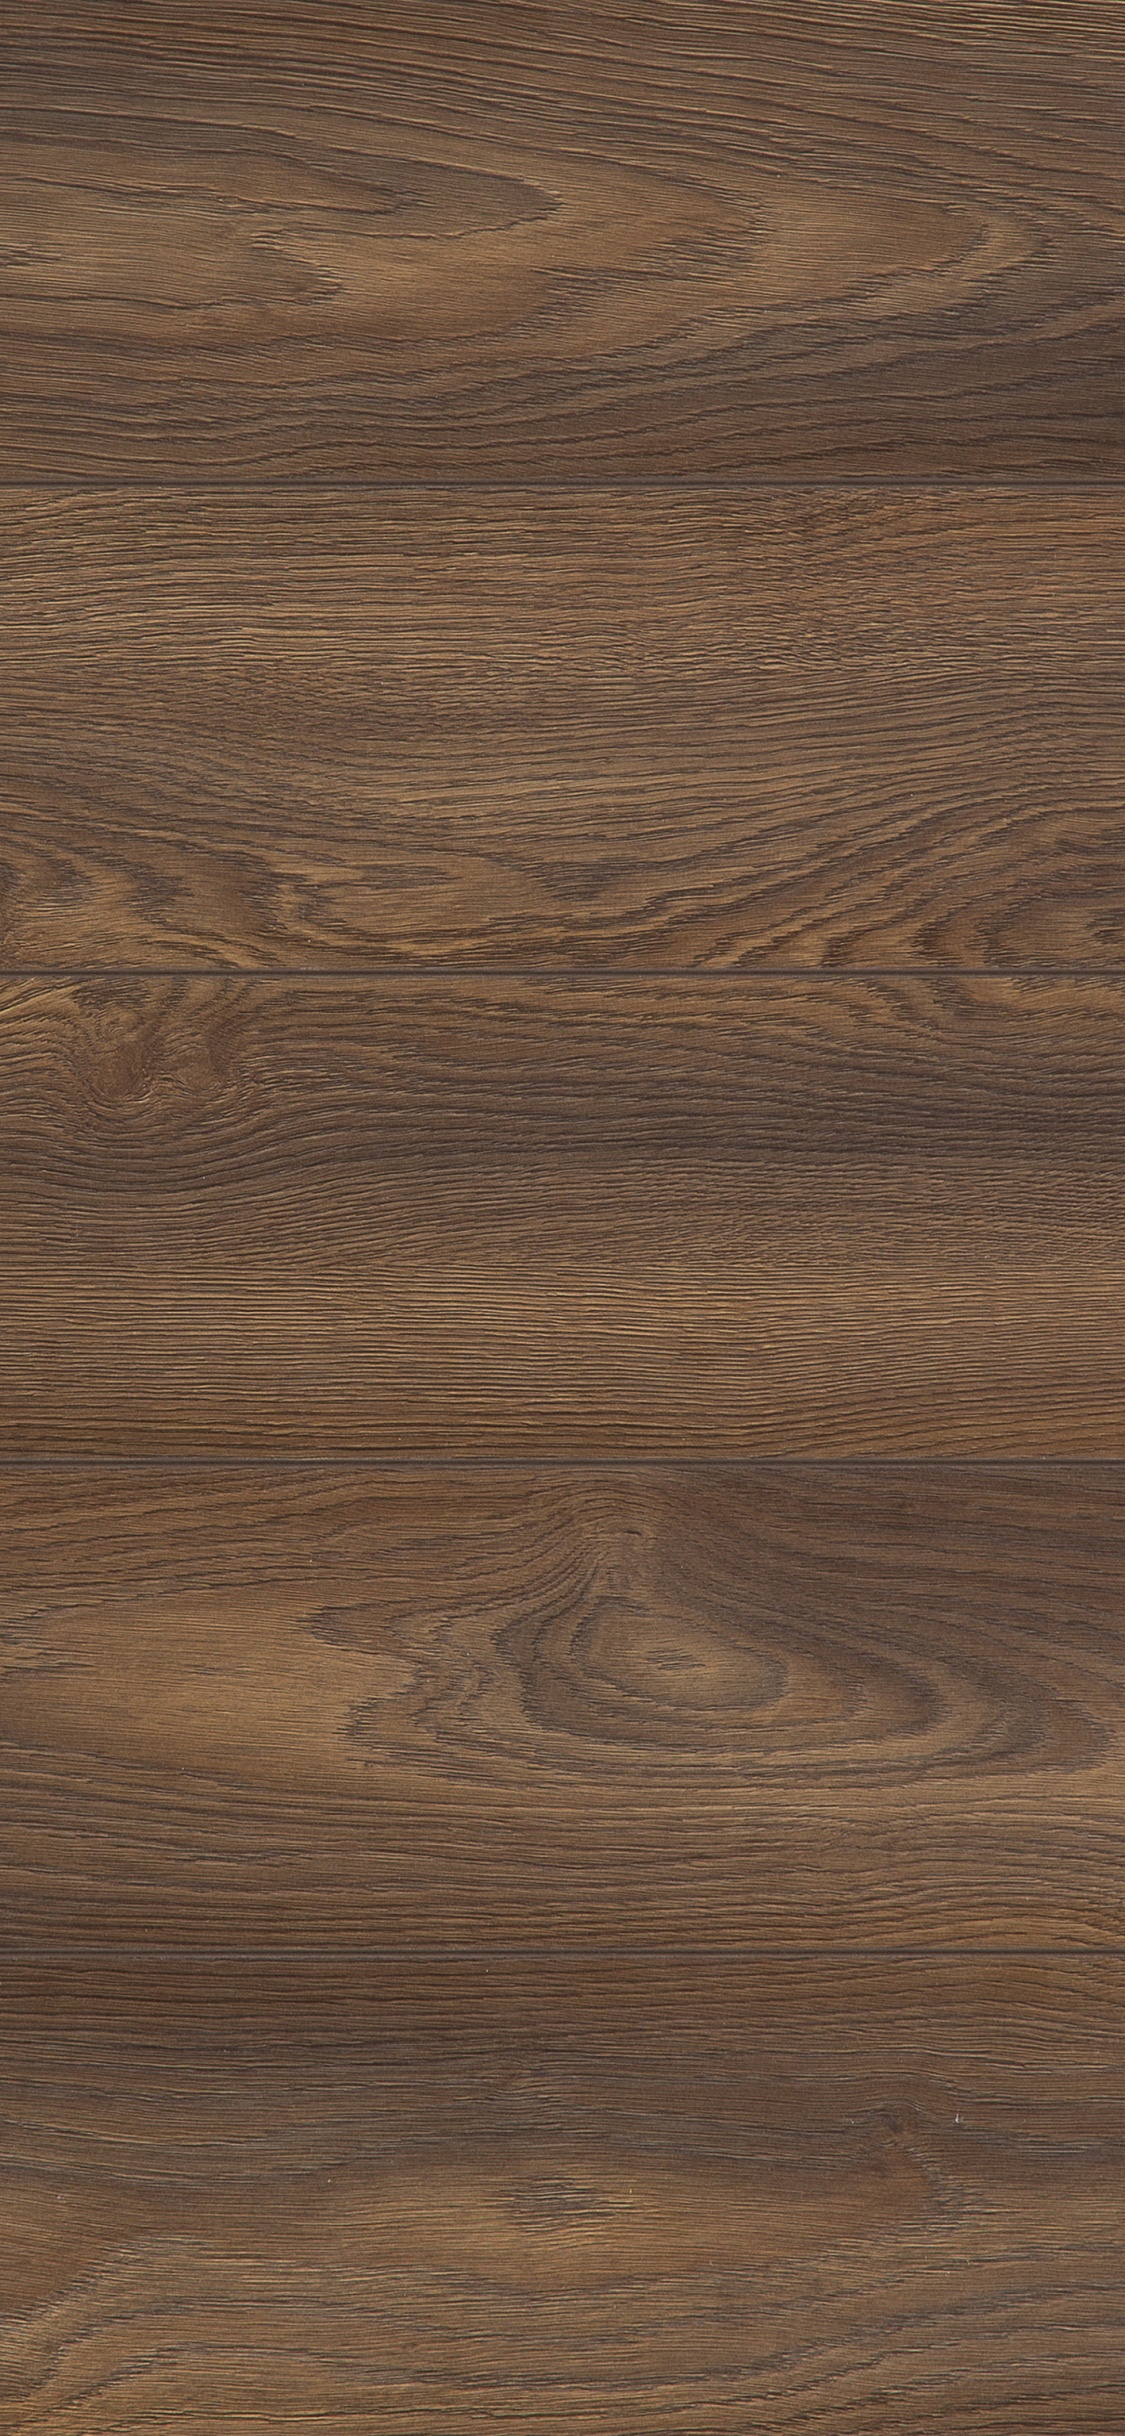 Brown Wooden Parquet Floor Tiles. Wallpaper in 1125x2436 Resolution